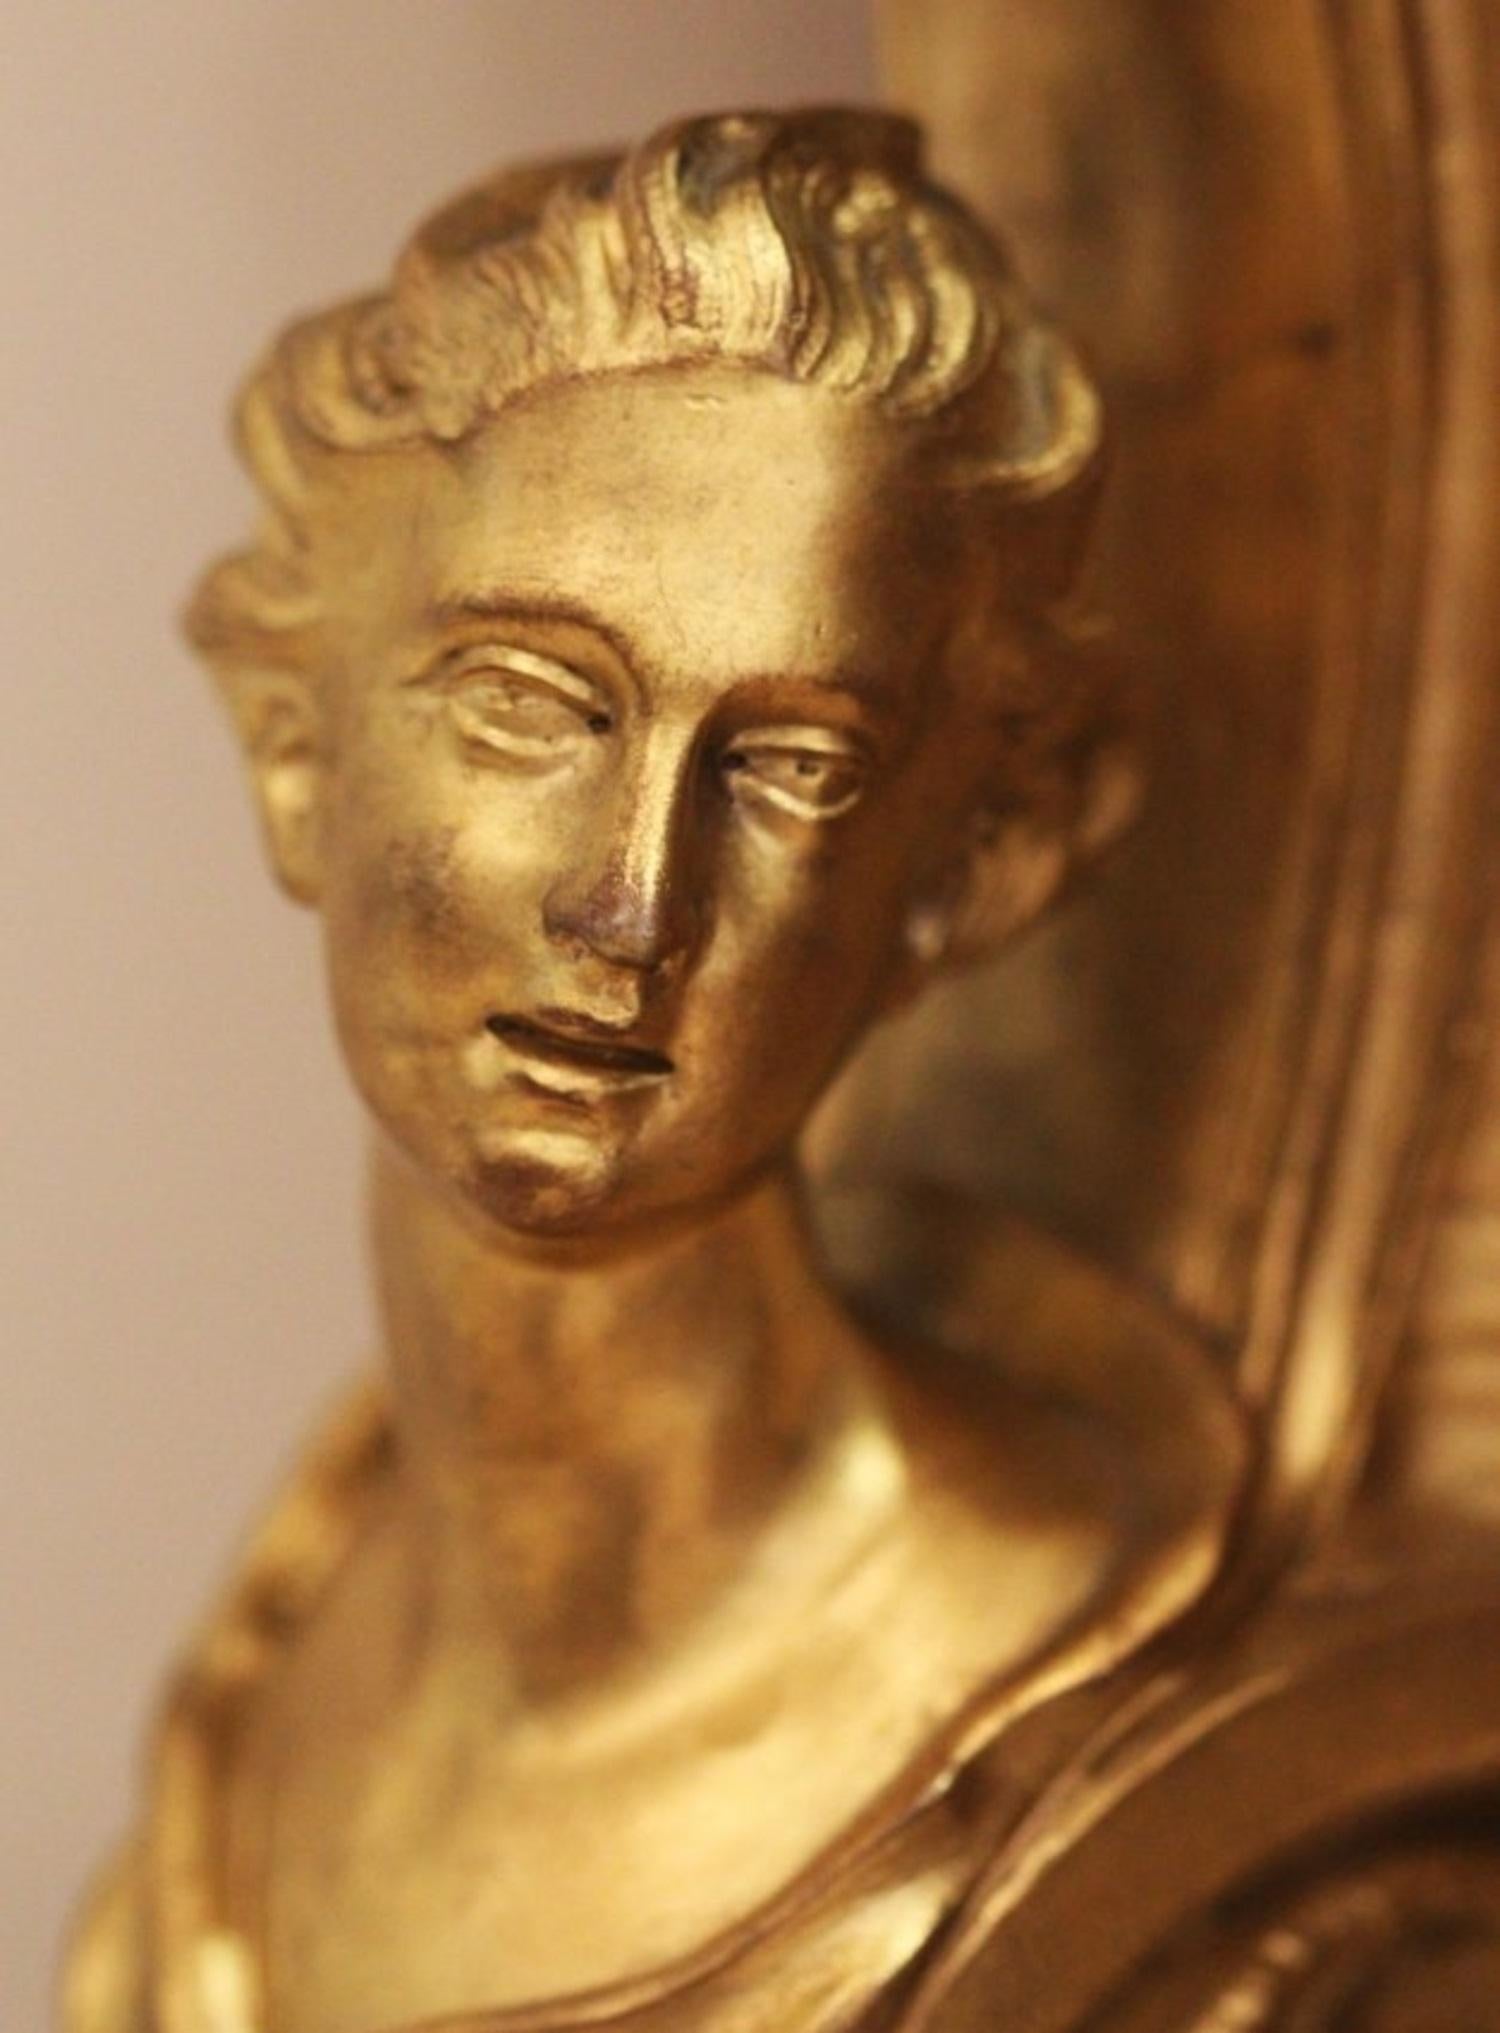 Superbe console François linke en bois royal monté en bronze doré,
vers 1900. Signé Linke. Le plateau en marbre brèche Violette façonné au-dessus de la frise centrée par une coquille Saint-Jacques,
flanqué de quatre bustes féminins reposant sur